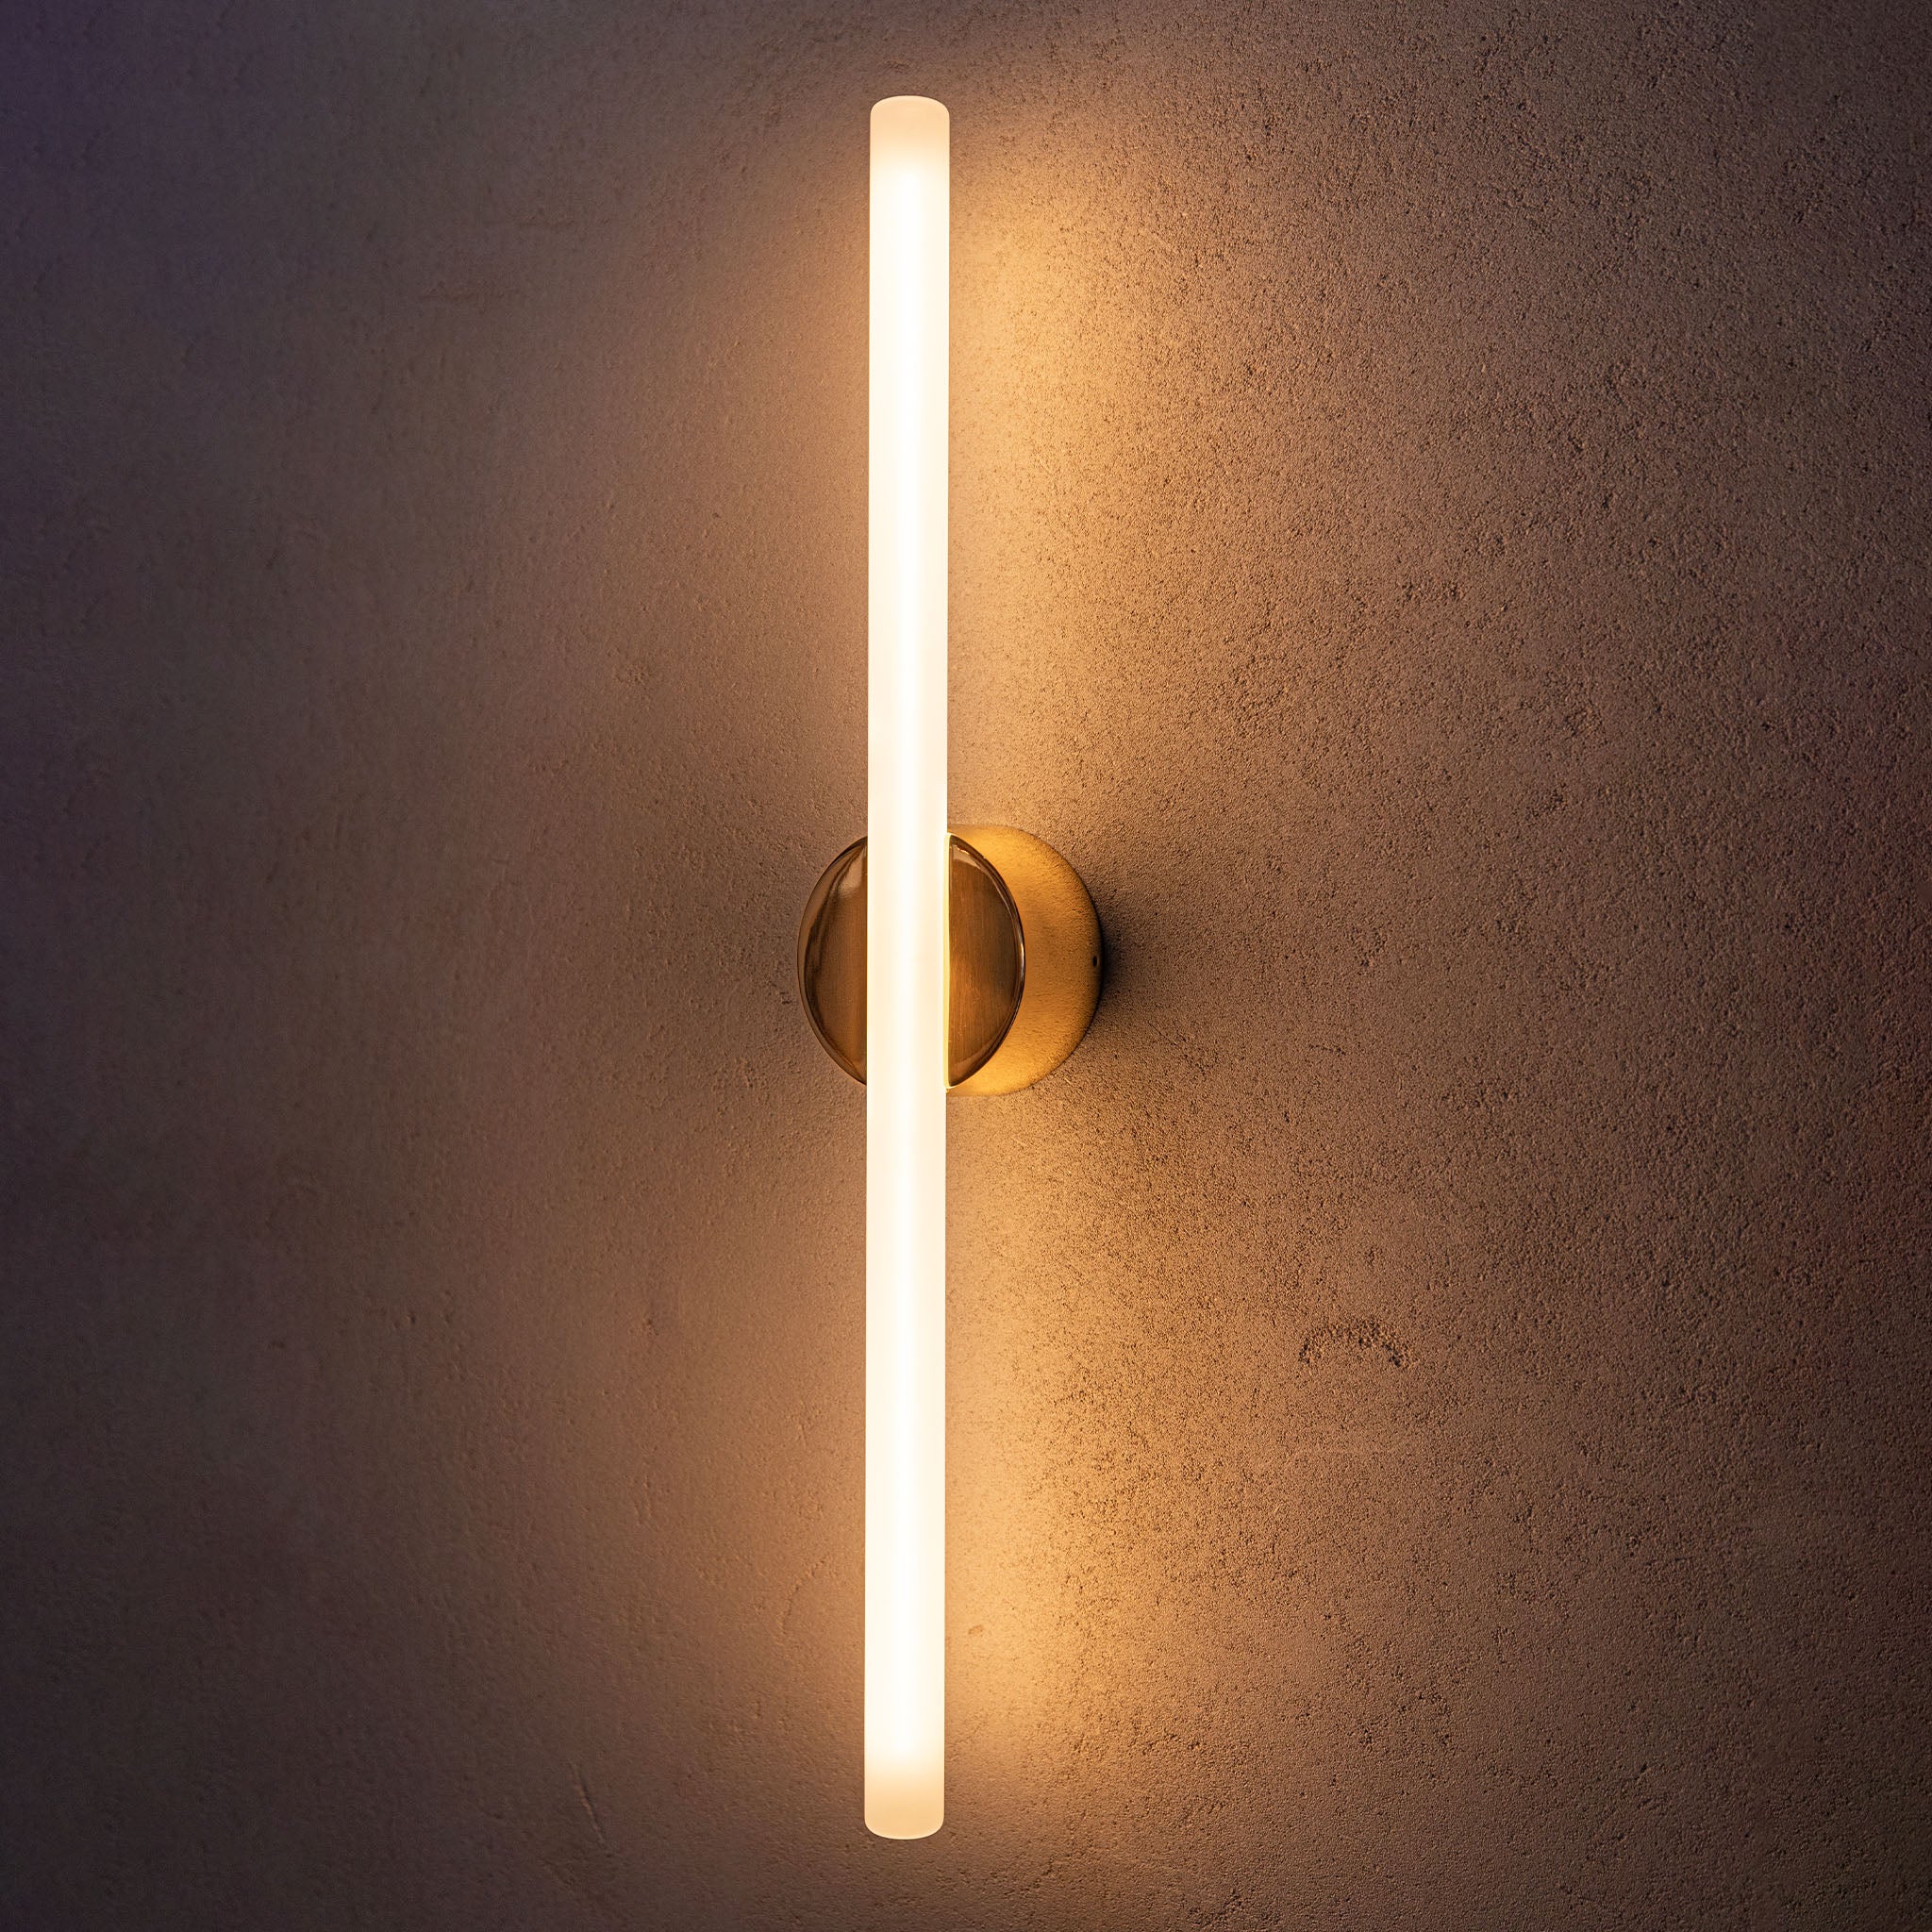 Kilter Wall Light - Solid Brass